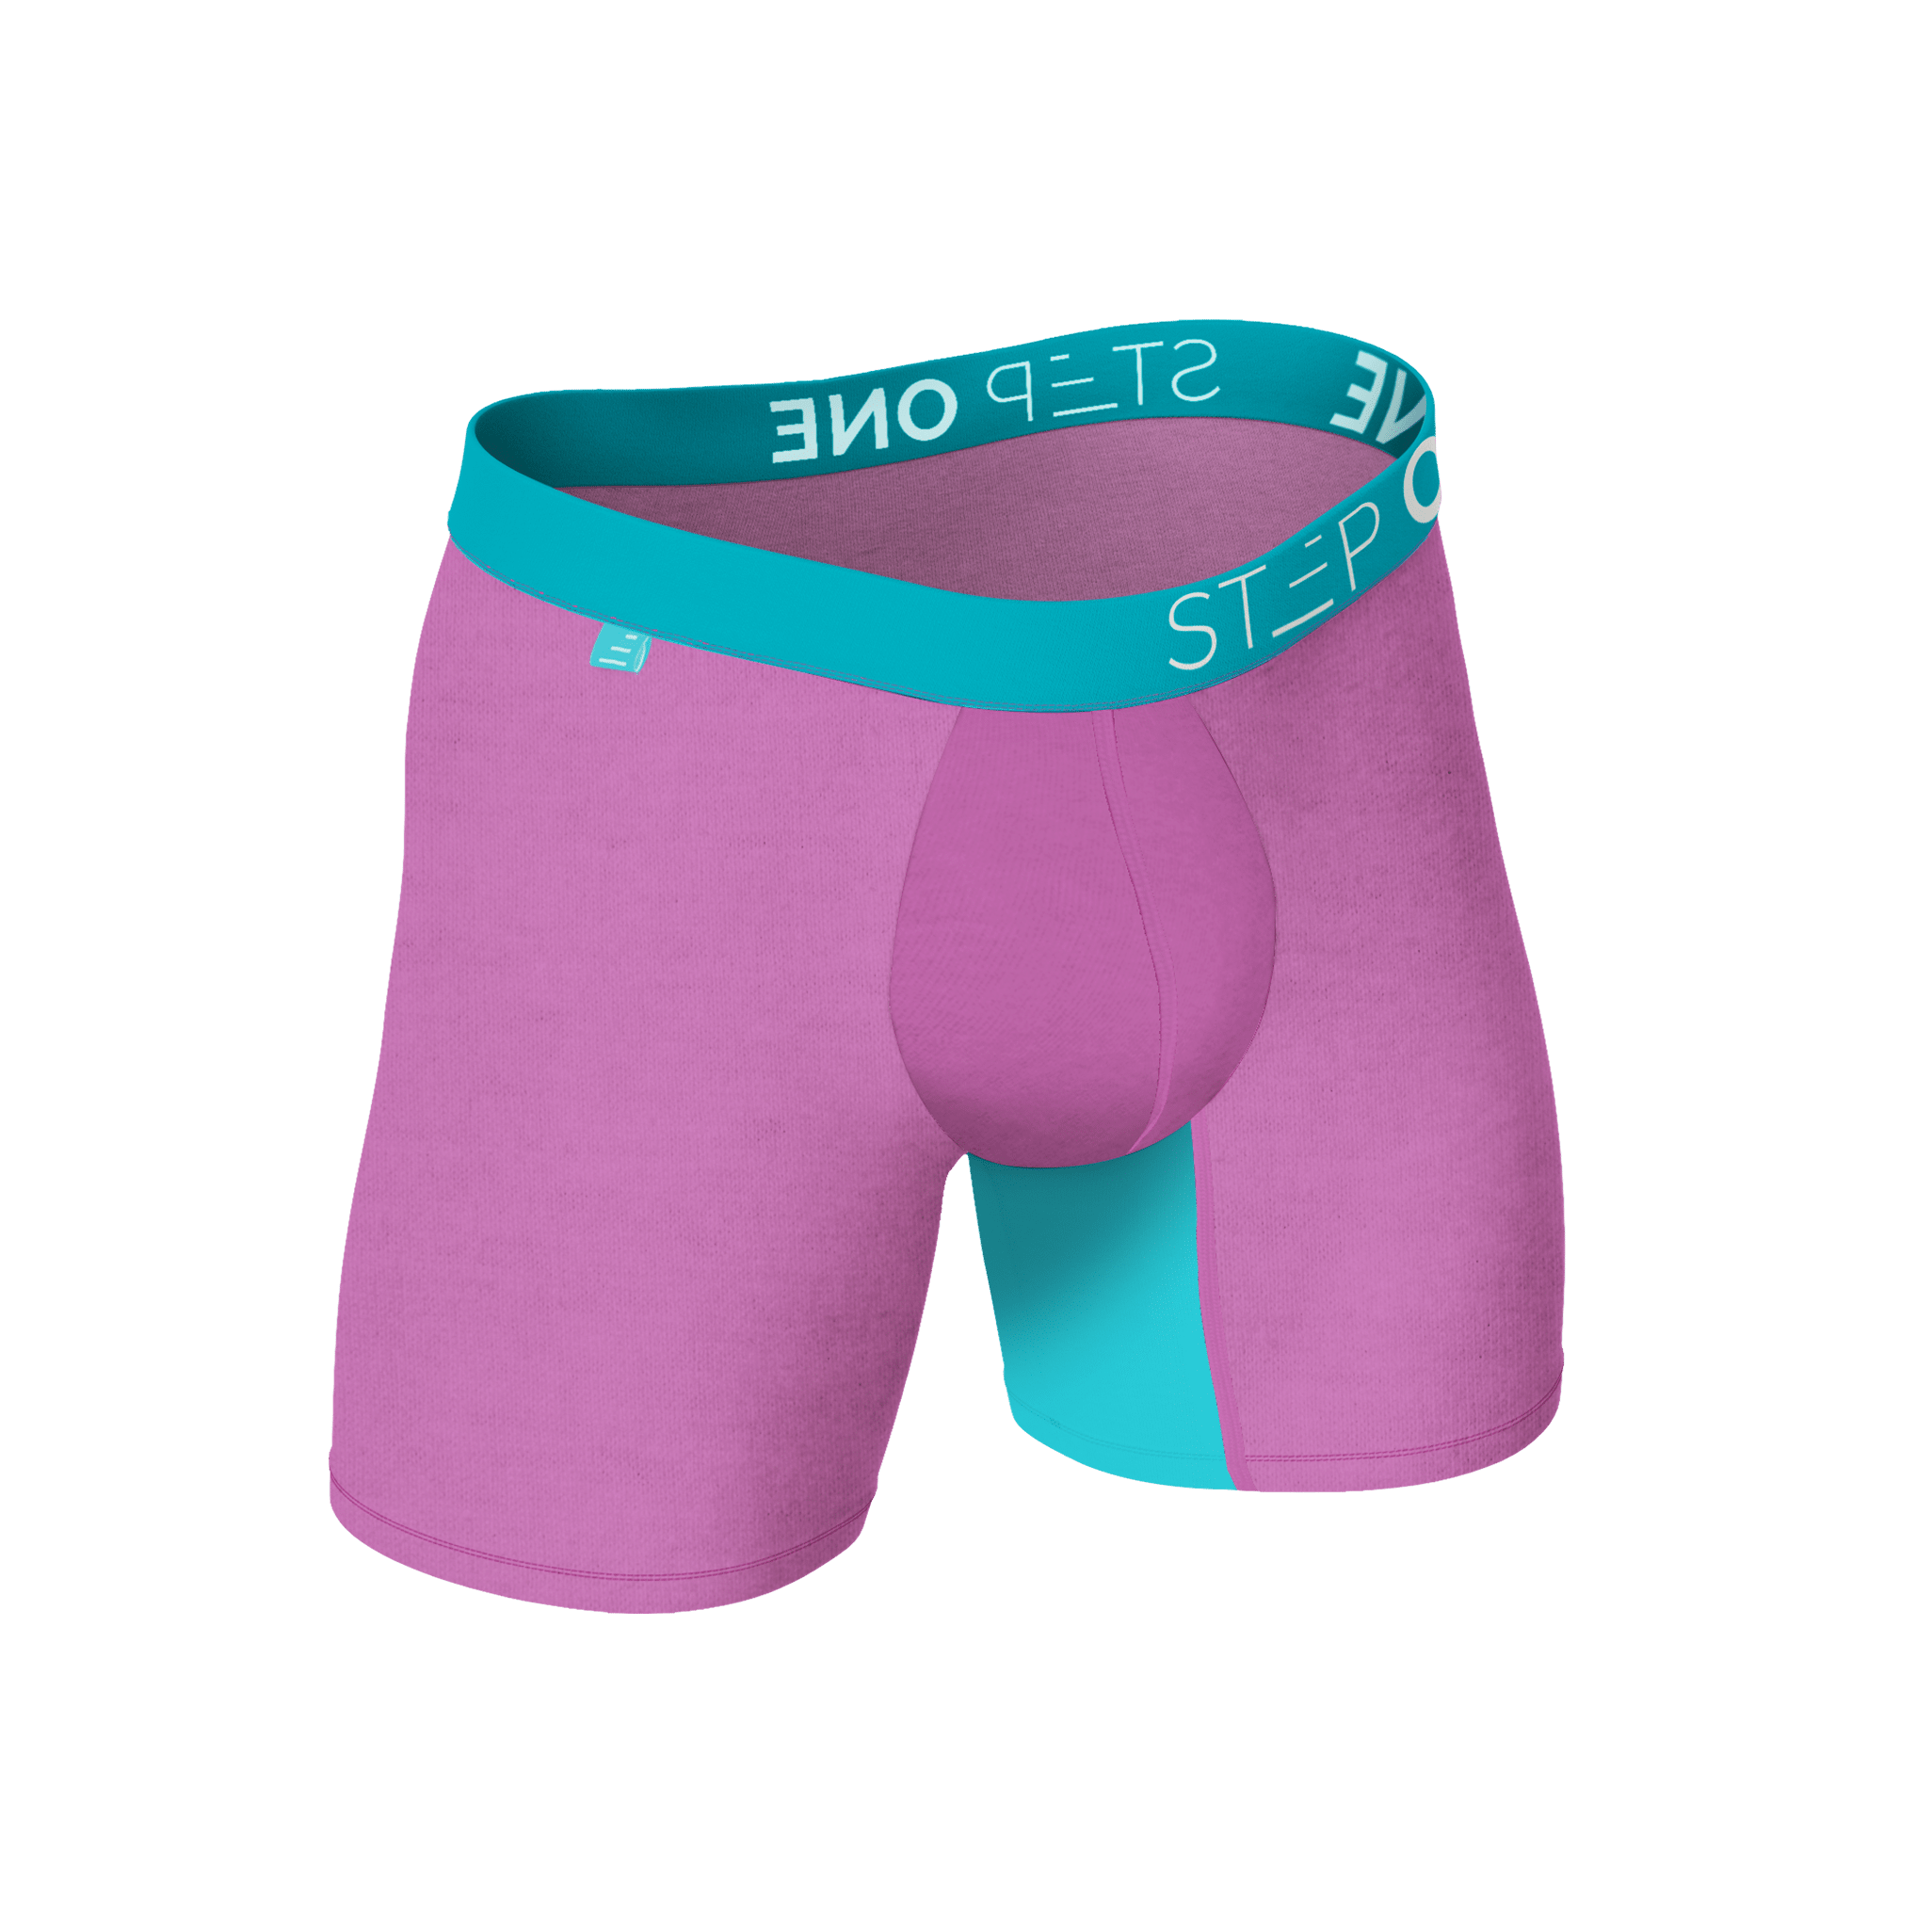 Mens Bamboo Underwear Online in USA